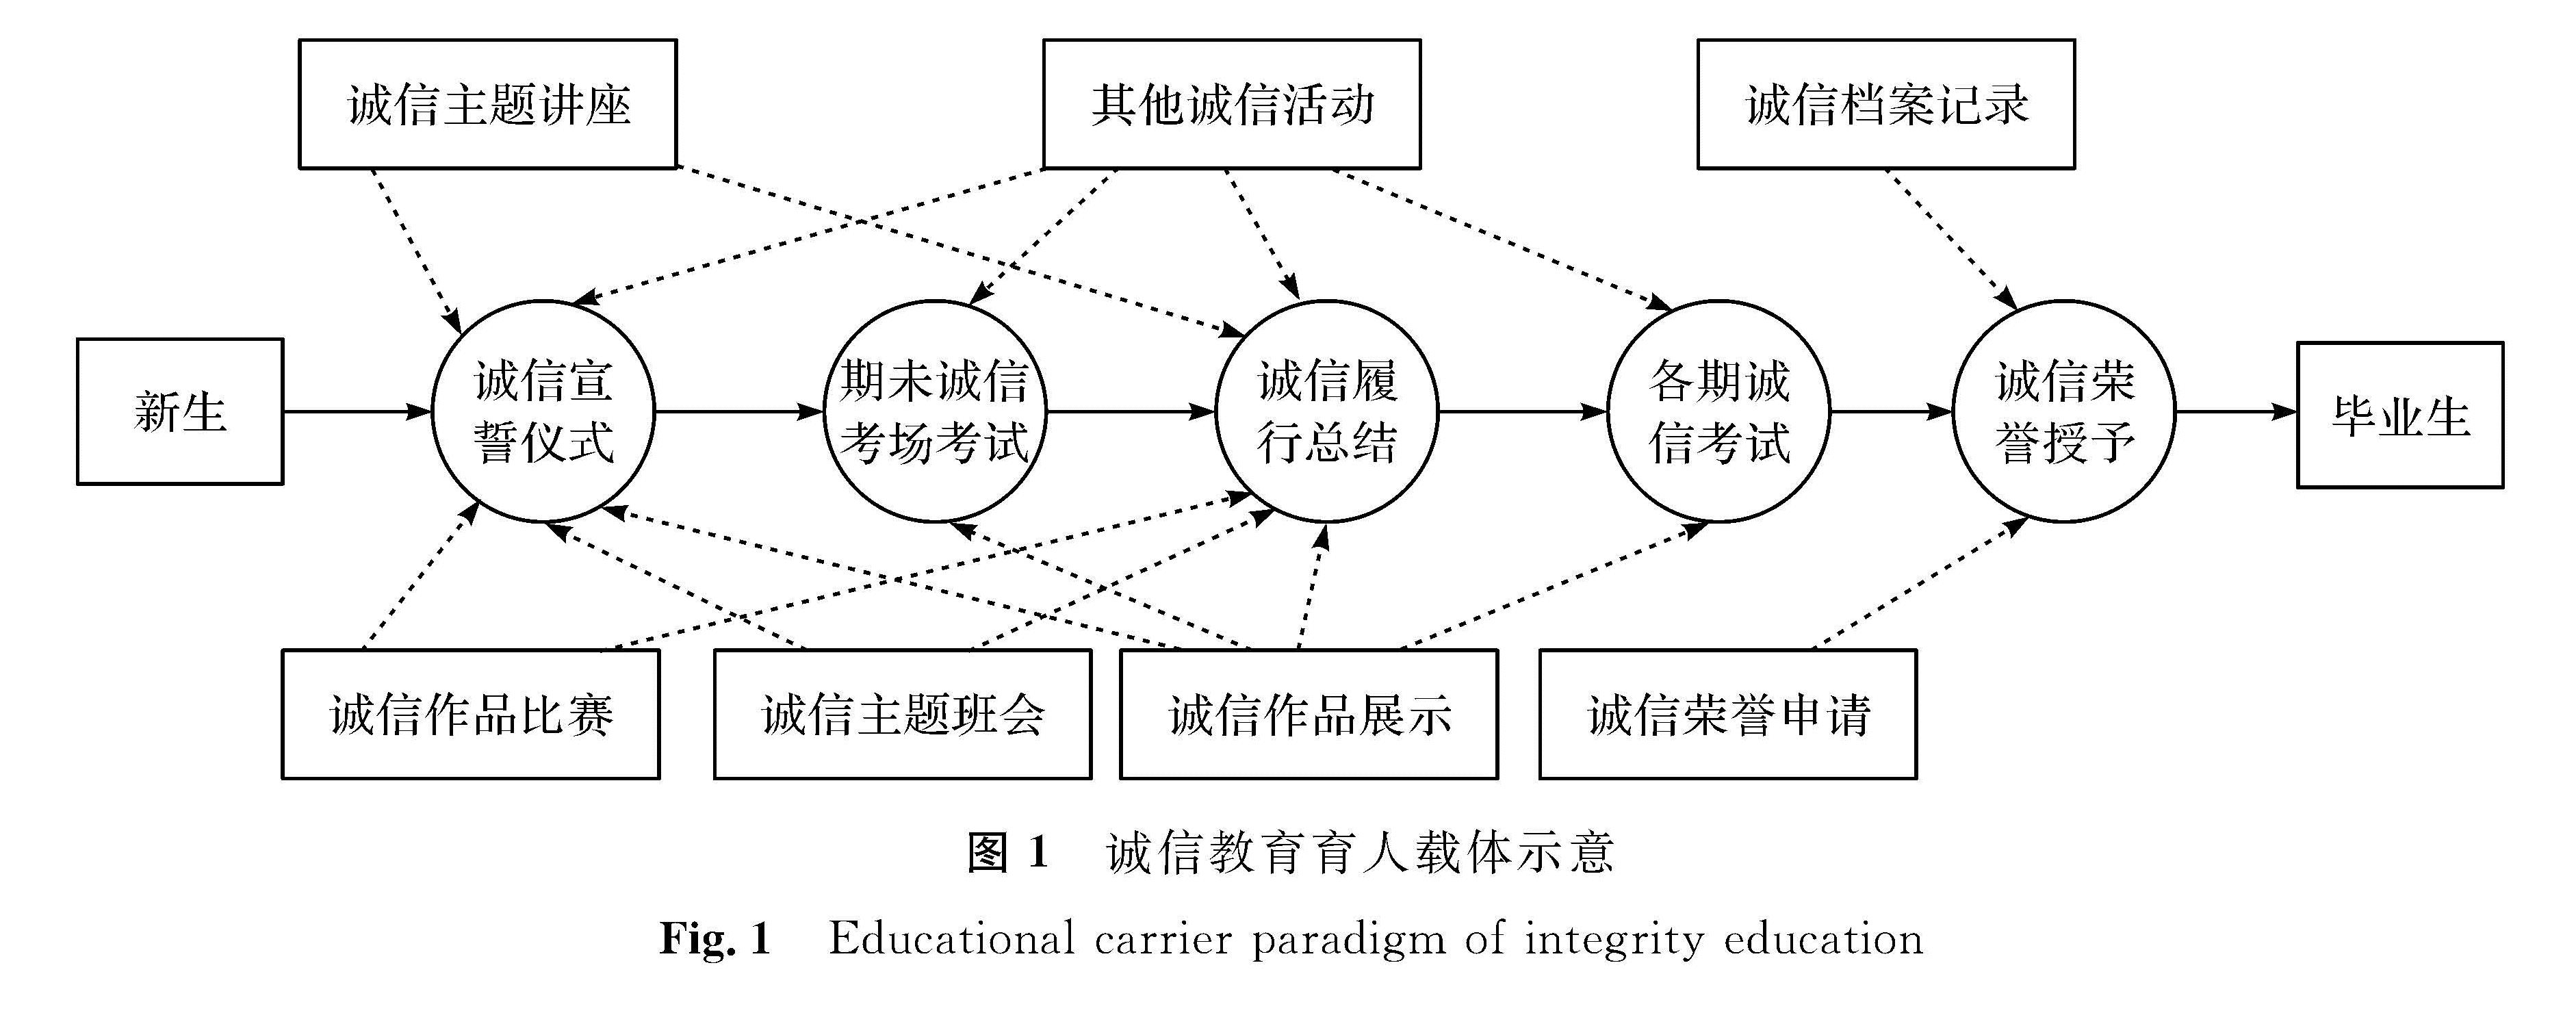 图1 诚信教育育人载体示意<br/>Fig.1 Educational carrier paradigm of integrity education